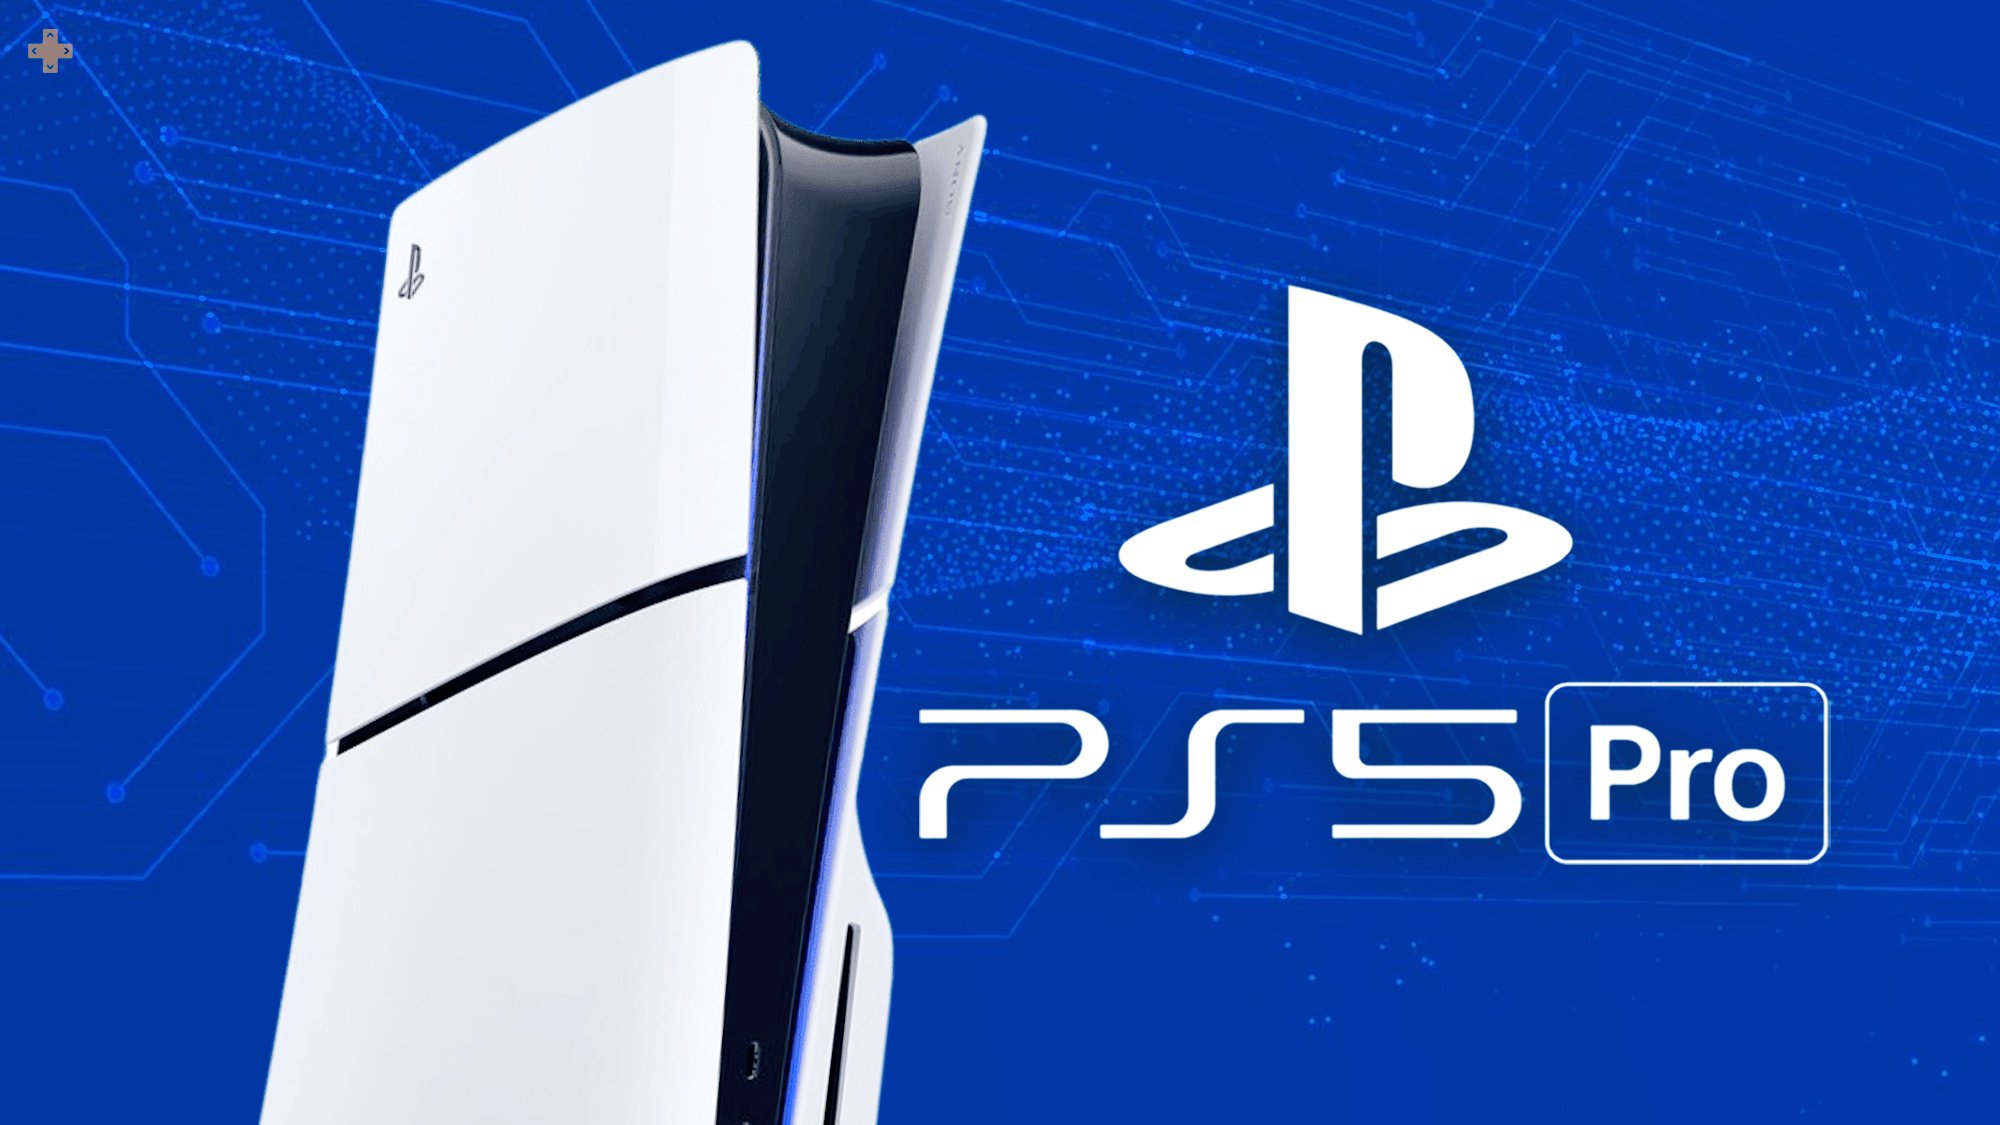 PS5 Pro : une sortie retardée volontairement à cause de GTA 6 ?